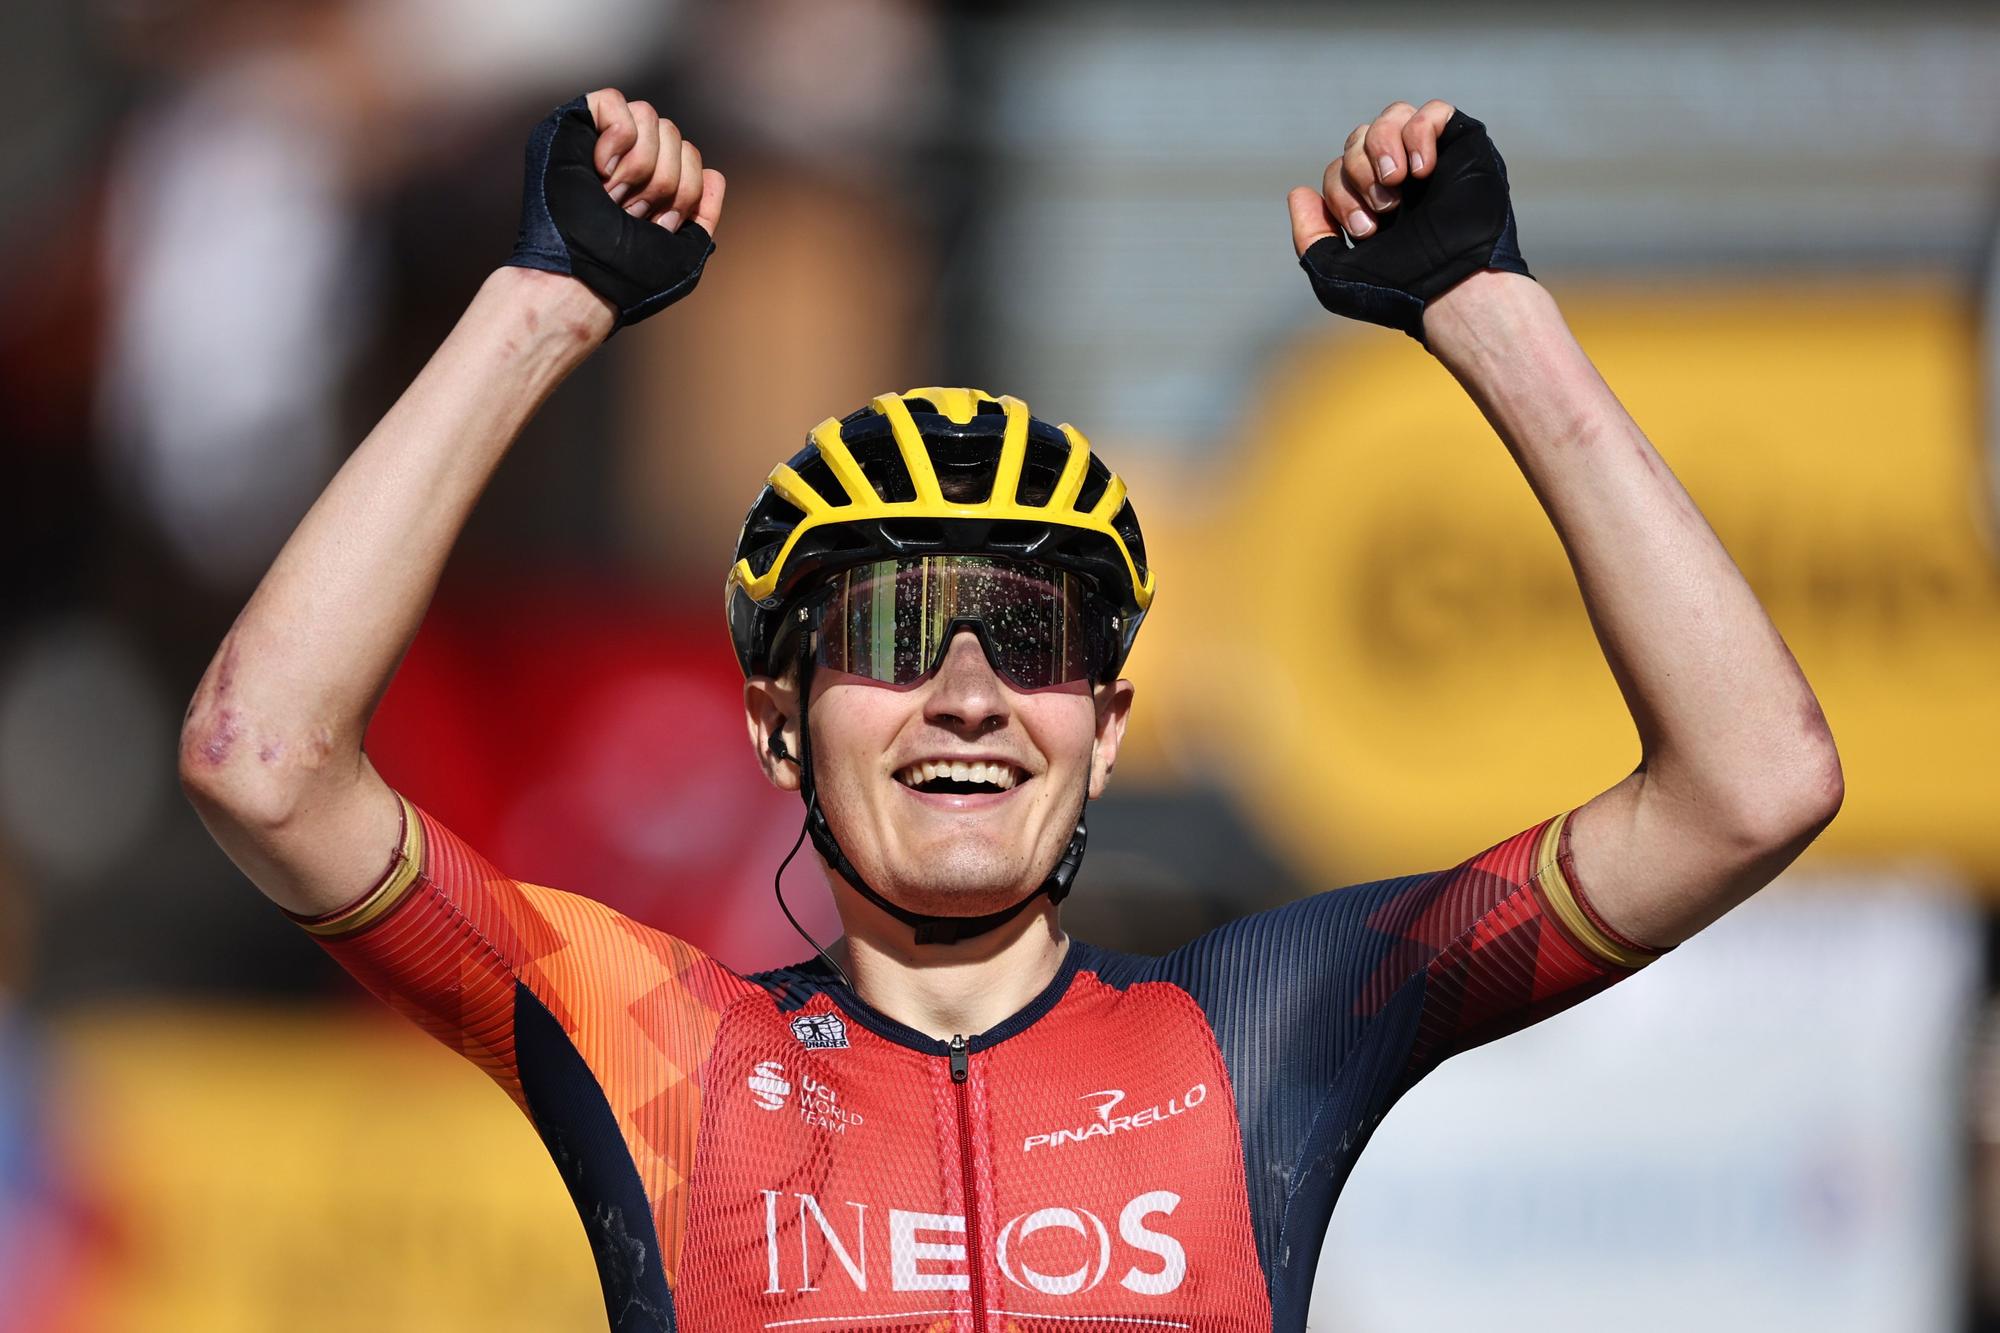 IMÁGENES | Las mejores imágenes de la etapa 14 del Tour de Francia